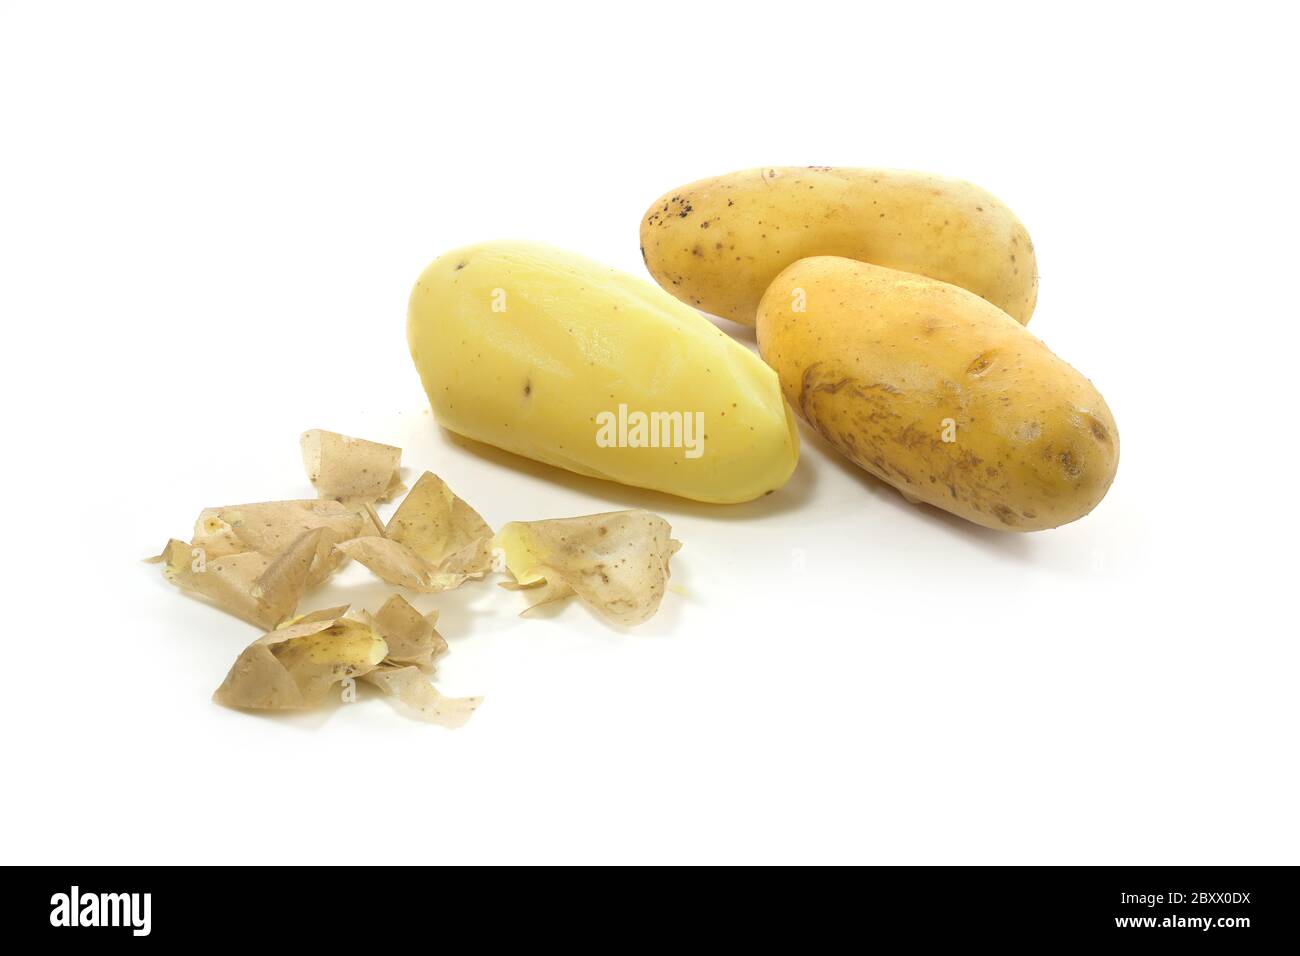 Tre patate giovani bollite nelle loro bucce, una di loro sbucciata, isolata su uno sfondo bianco, spazio di copia Foto Stock